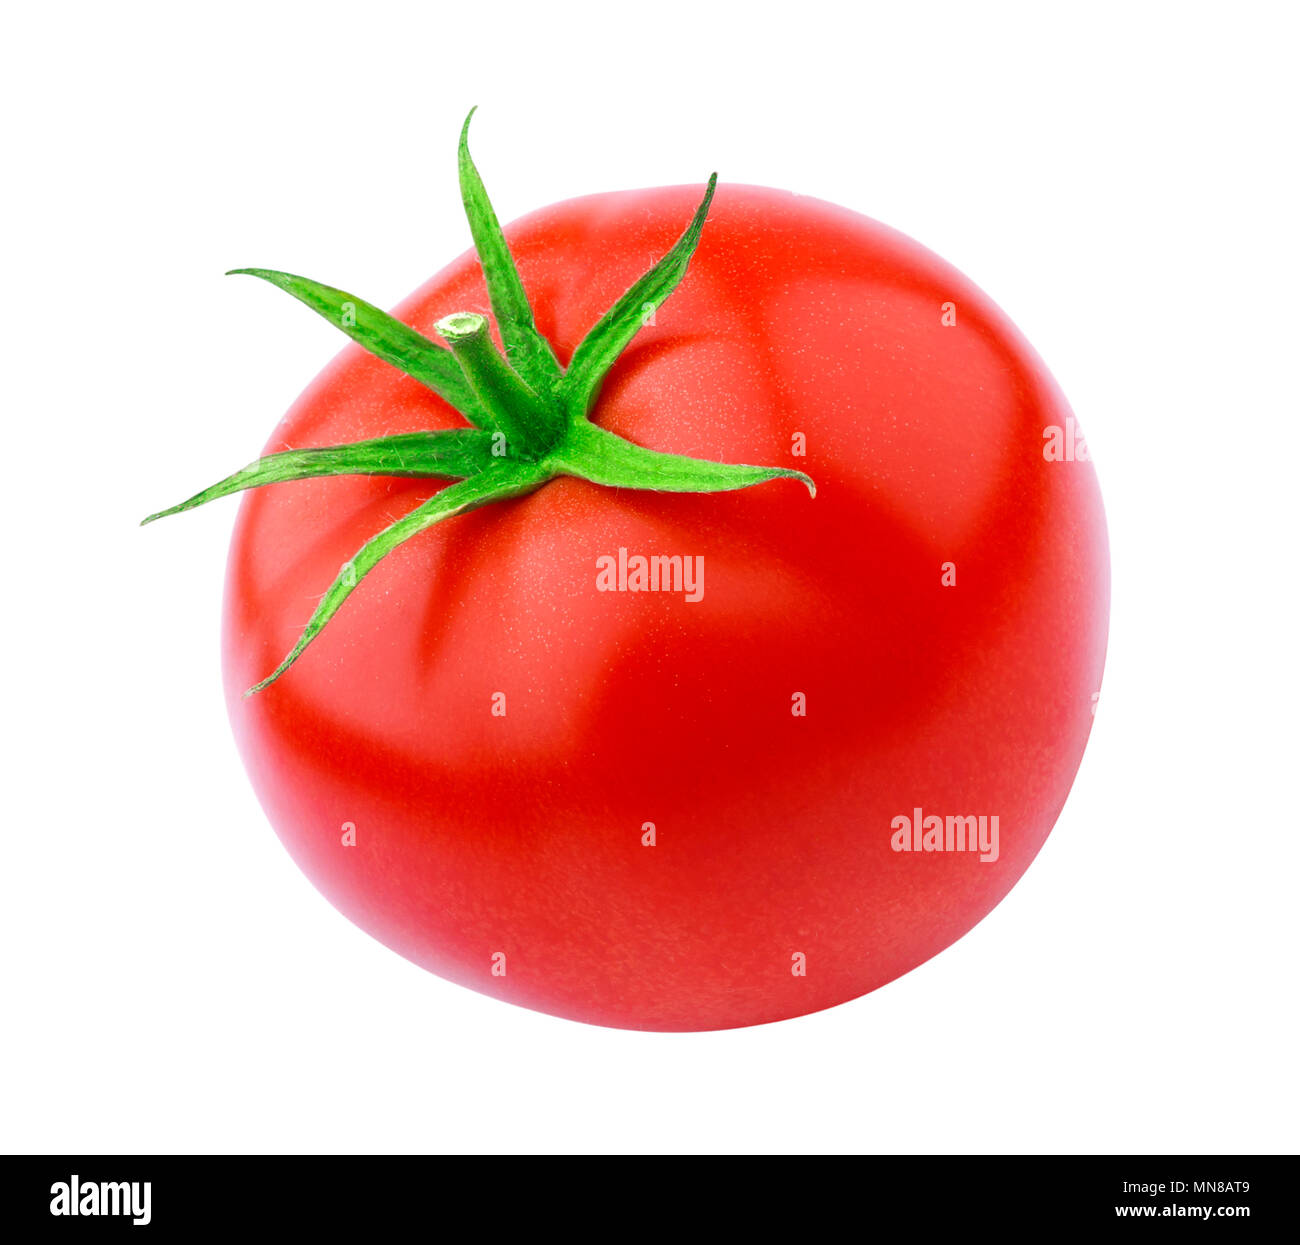 One tomato isolated isolated on white background Stock Photo